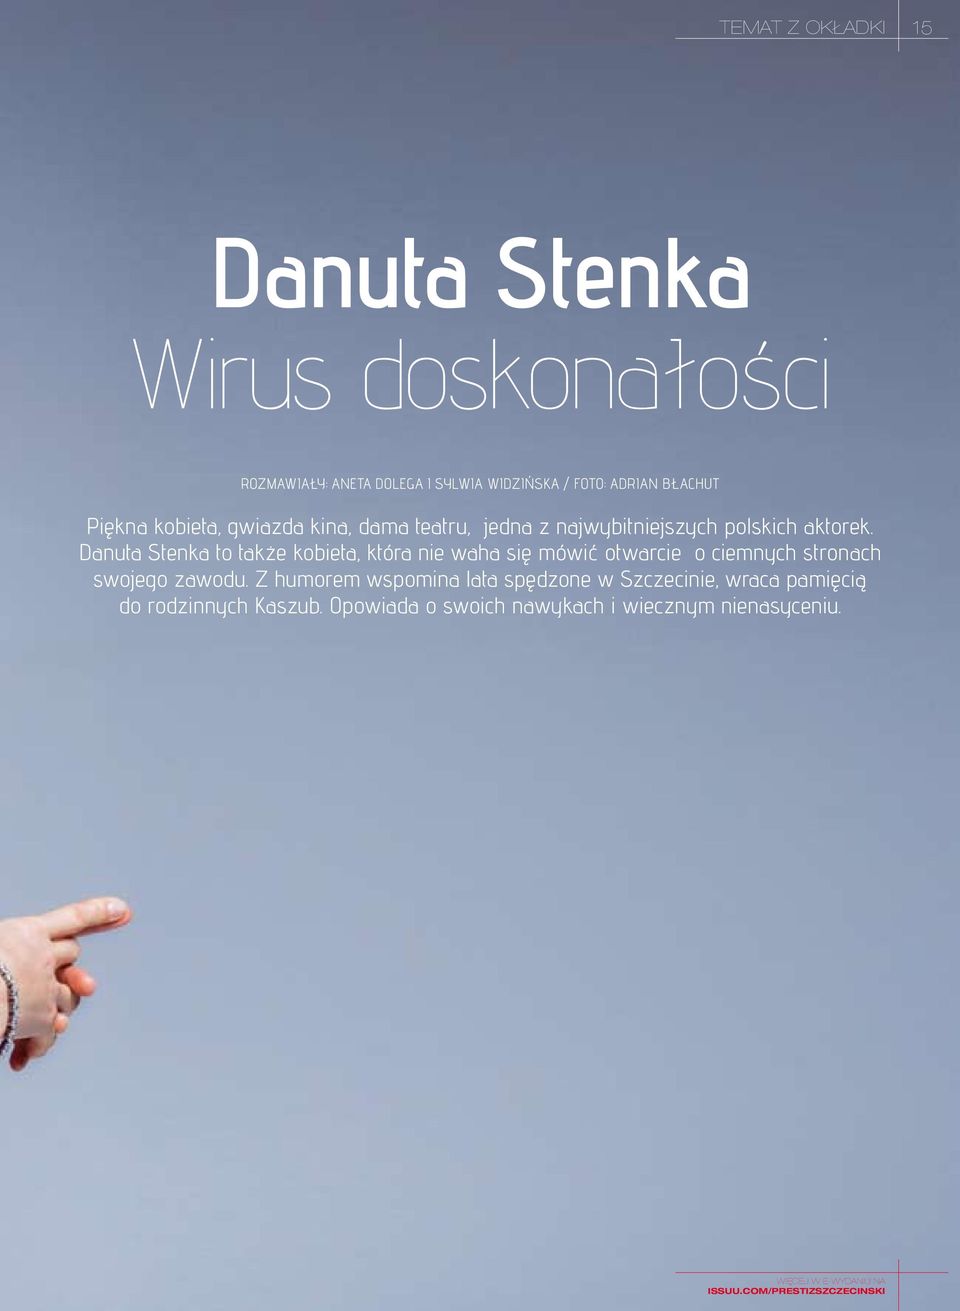 Danuta Stenka to także kobieta, która nie waha się mówić otwarcie o ciemnych stronach swojego zawodu.